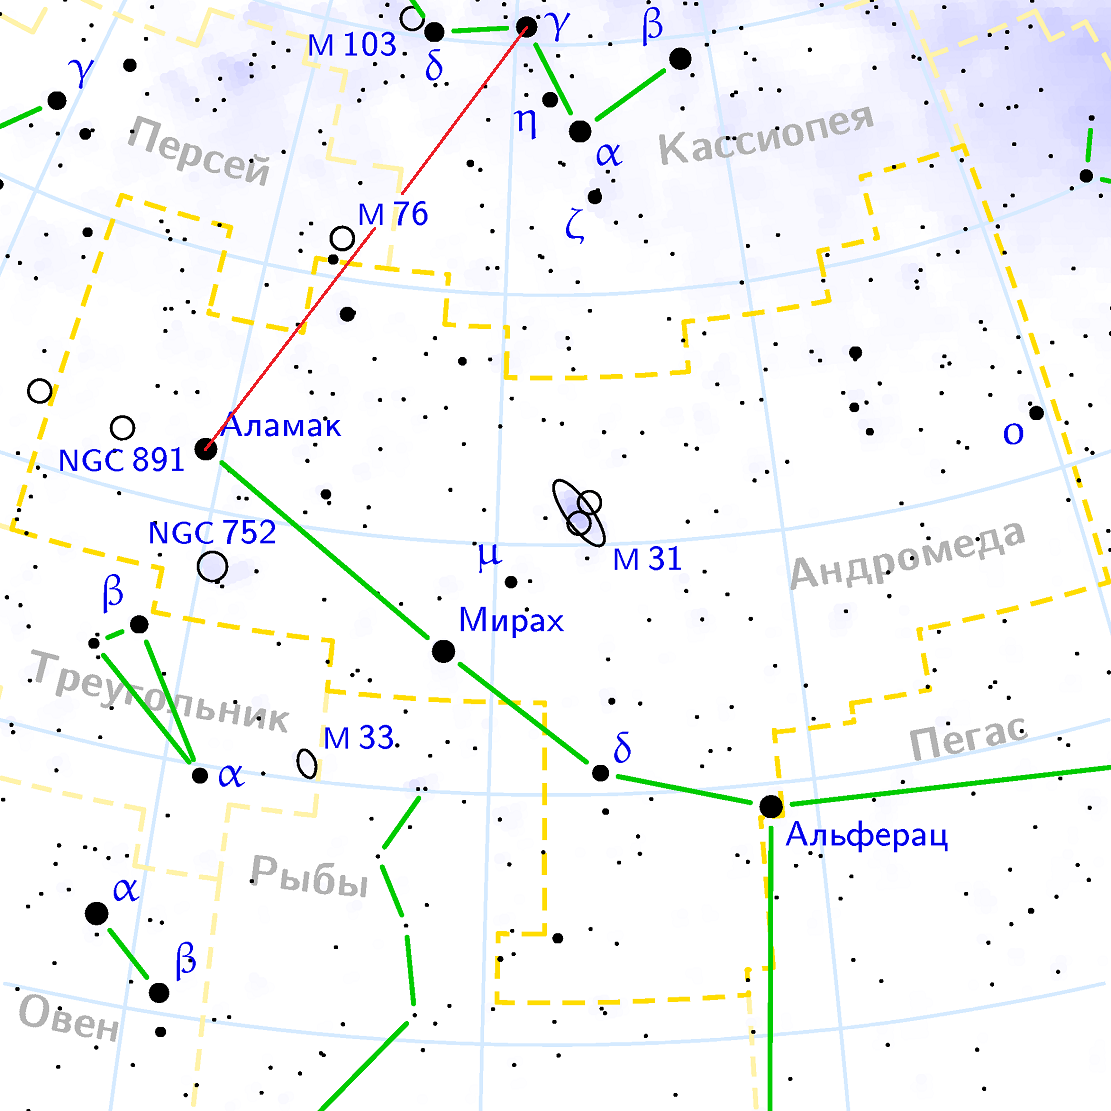 Position de la nébuleuse M76 par rapport aux constellations Persky, K asiopeia et Andromède